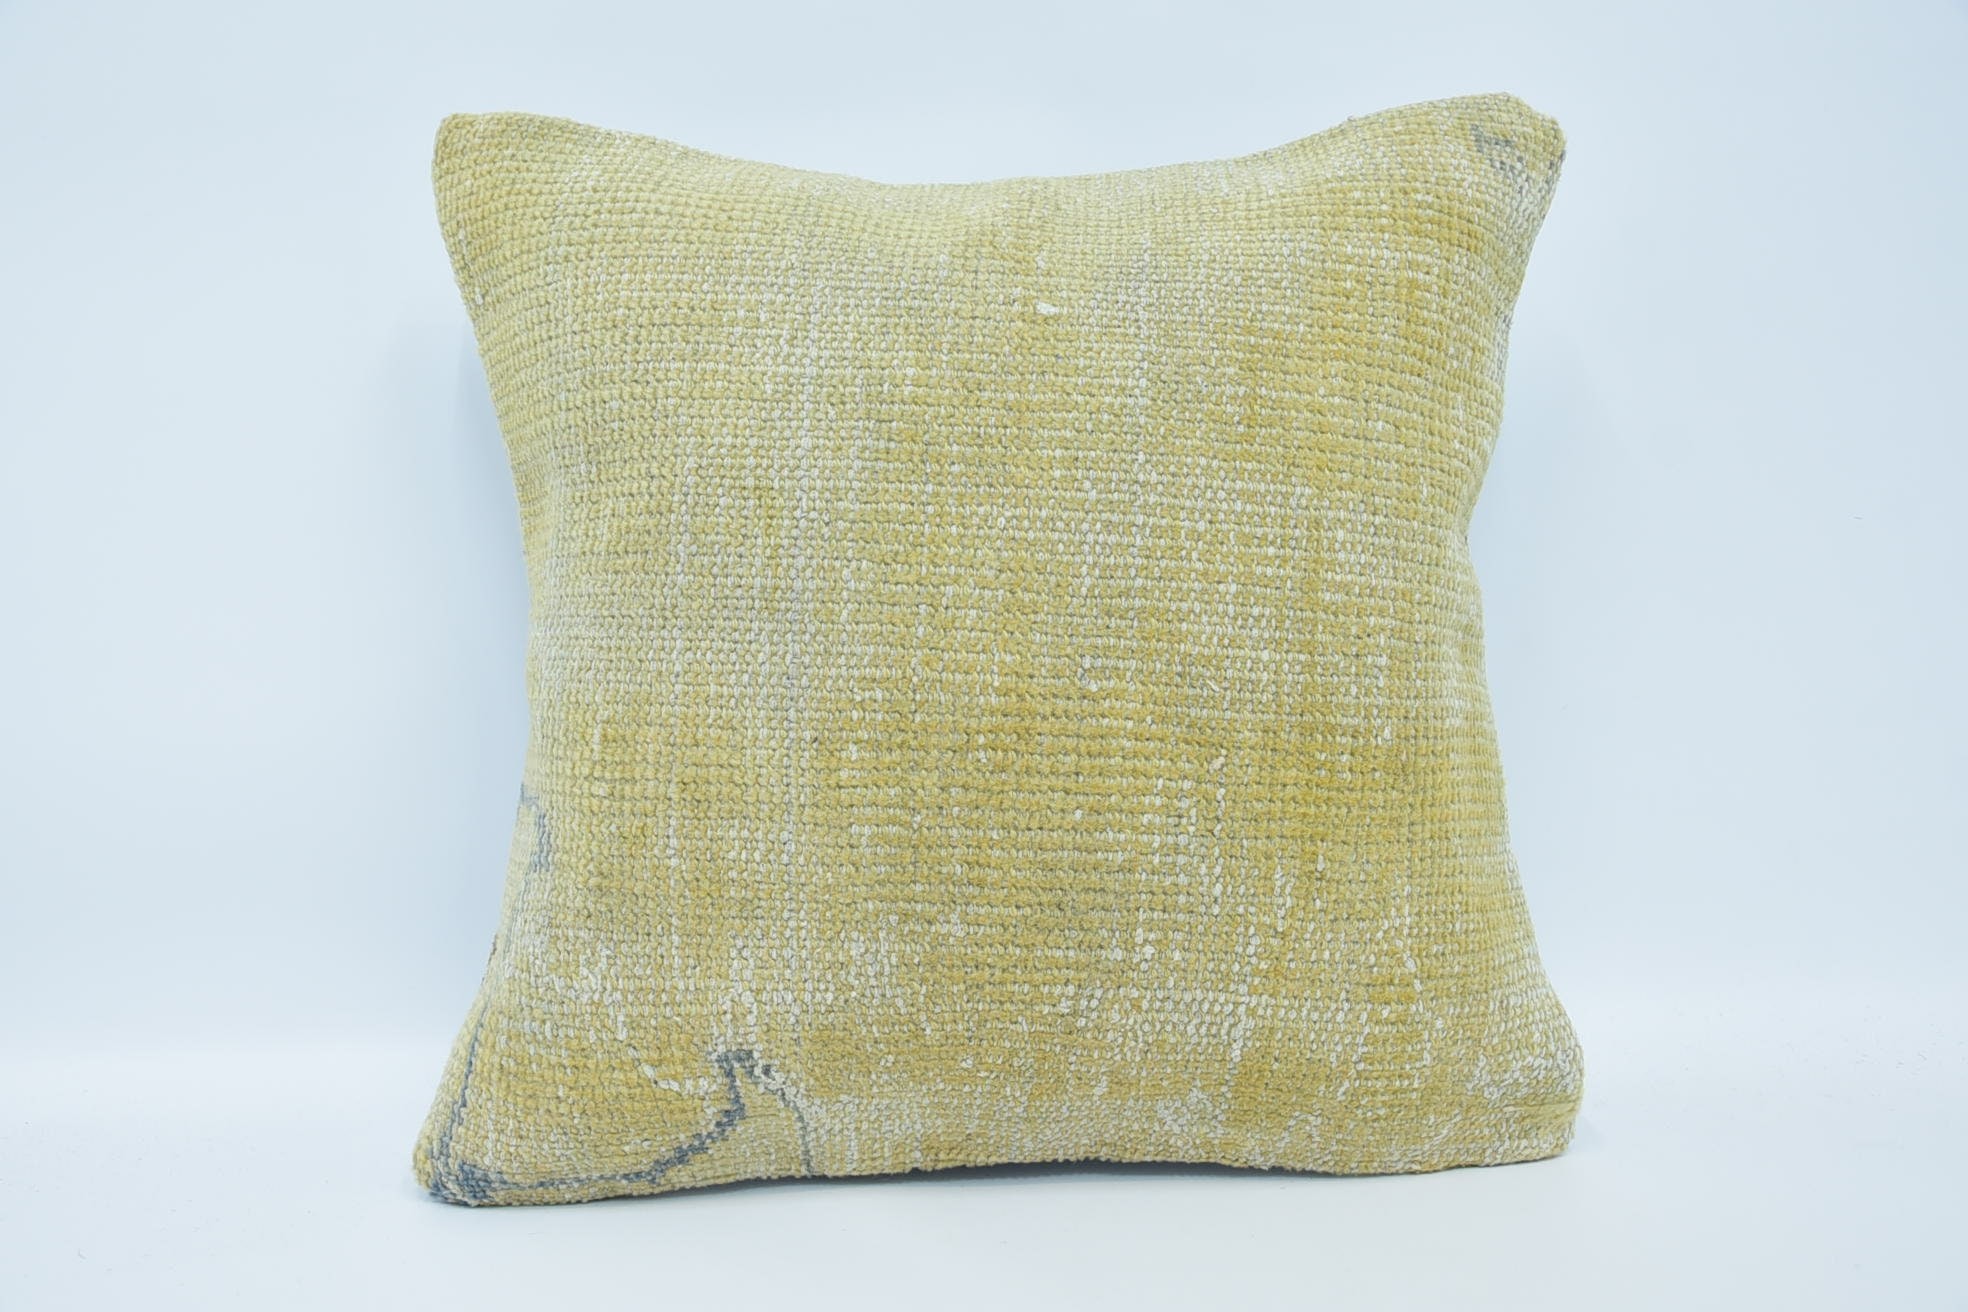 18"x18" Beige Cushion, Pillow for Couch, Throw Kilim Pillow, Vintage Kilim Pillow, Pet Pillow Cover, Floor Pillow Sham